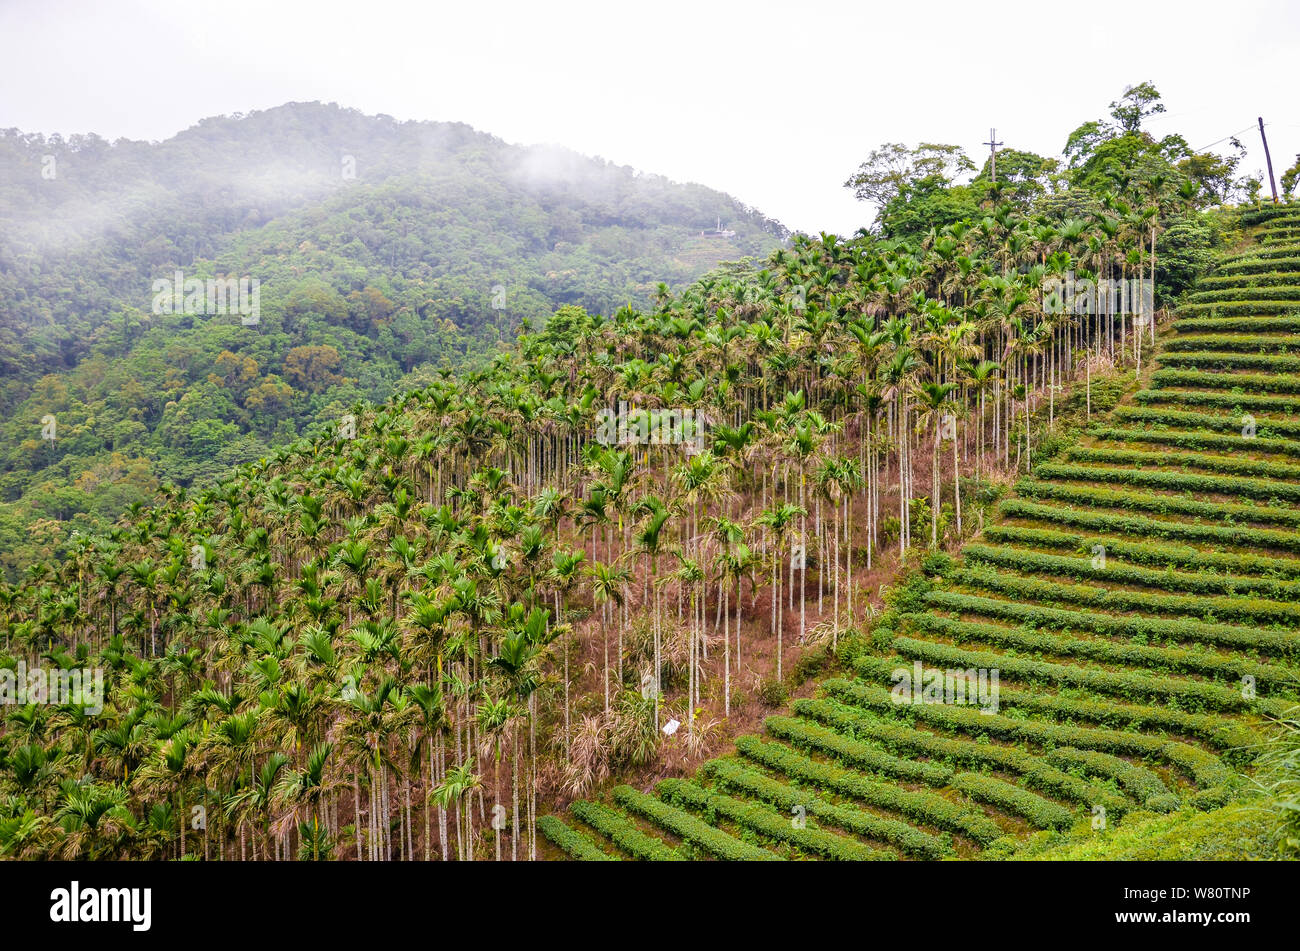 Moody paysage avec des plantations de thé en terrasse entouré de forêts tropicales et de palmiers. Photographié à Taiwan, en Asie. Les paysages brumeux. Brouillard, brouillard. Banque D'Images